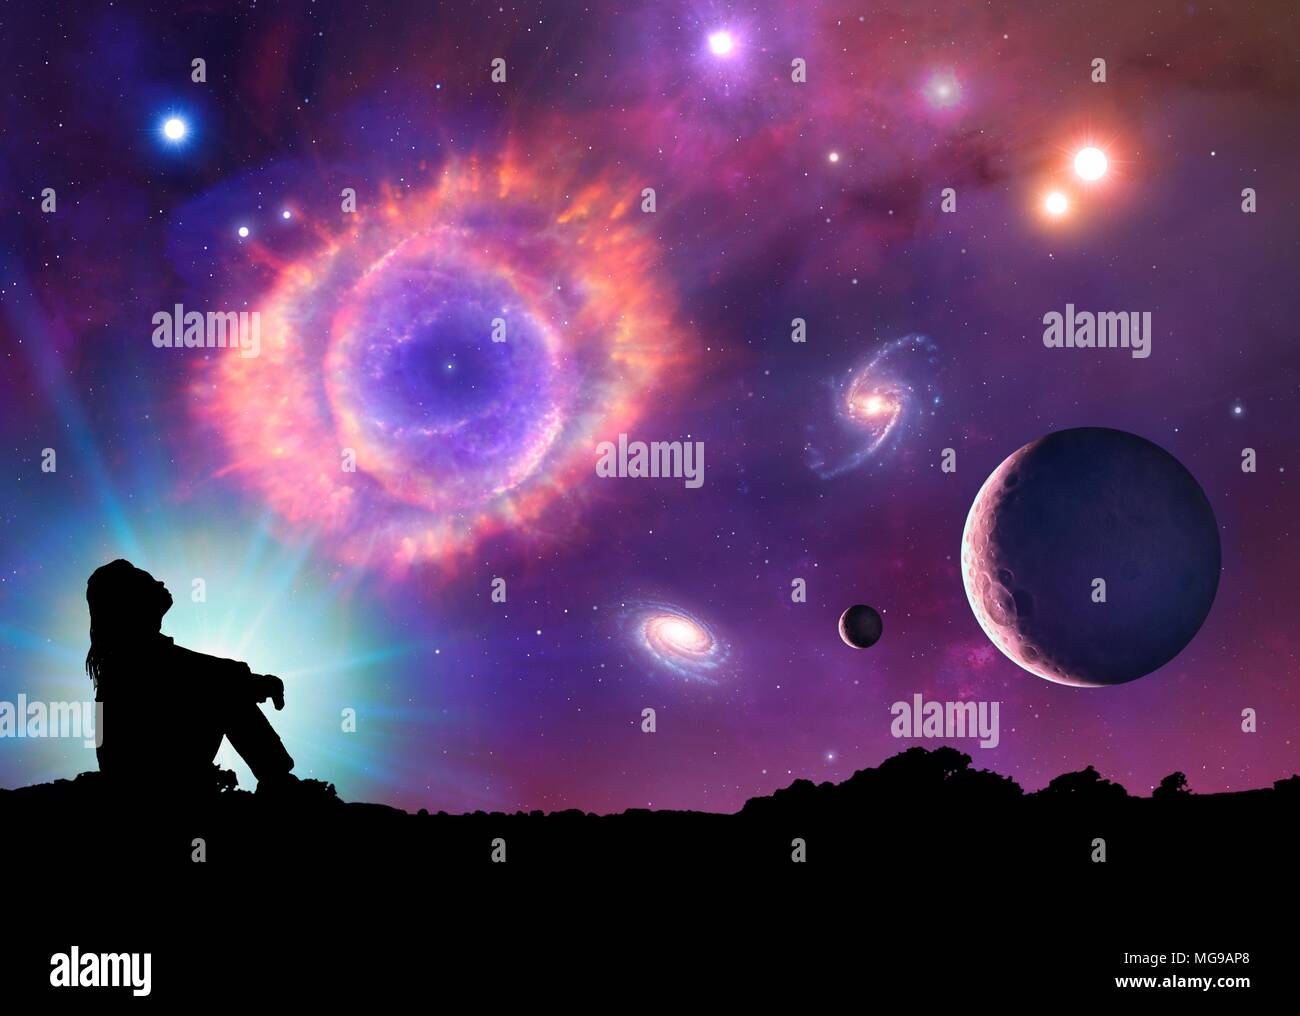 Il s'agit d'une illustration conceptuelle représentant l'espace et l'astronomie en général. Il montre les différents objets qui peuvent être trouvés dans l'Univers : les planètes, lunes, étoiles, nébuleuses et galaxies. L'élément central est une nébuleuse planétaire, le cast-off reste d'une étoile mourante. Une femme en silhouette est vu looking up dans l'espace. Banque D'Images